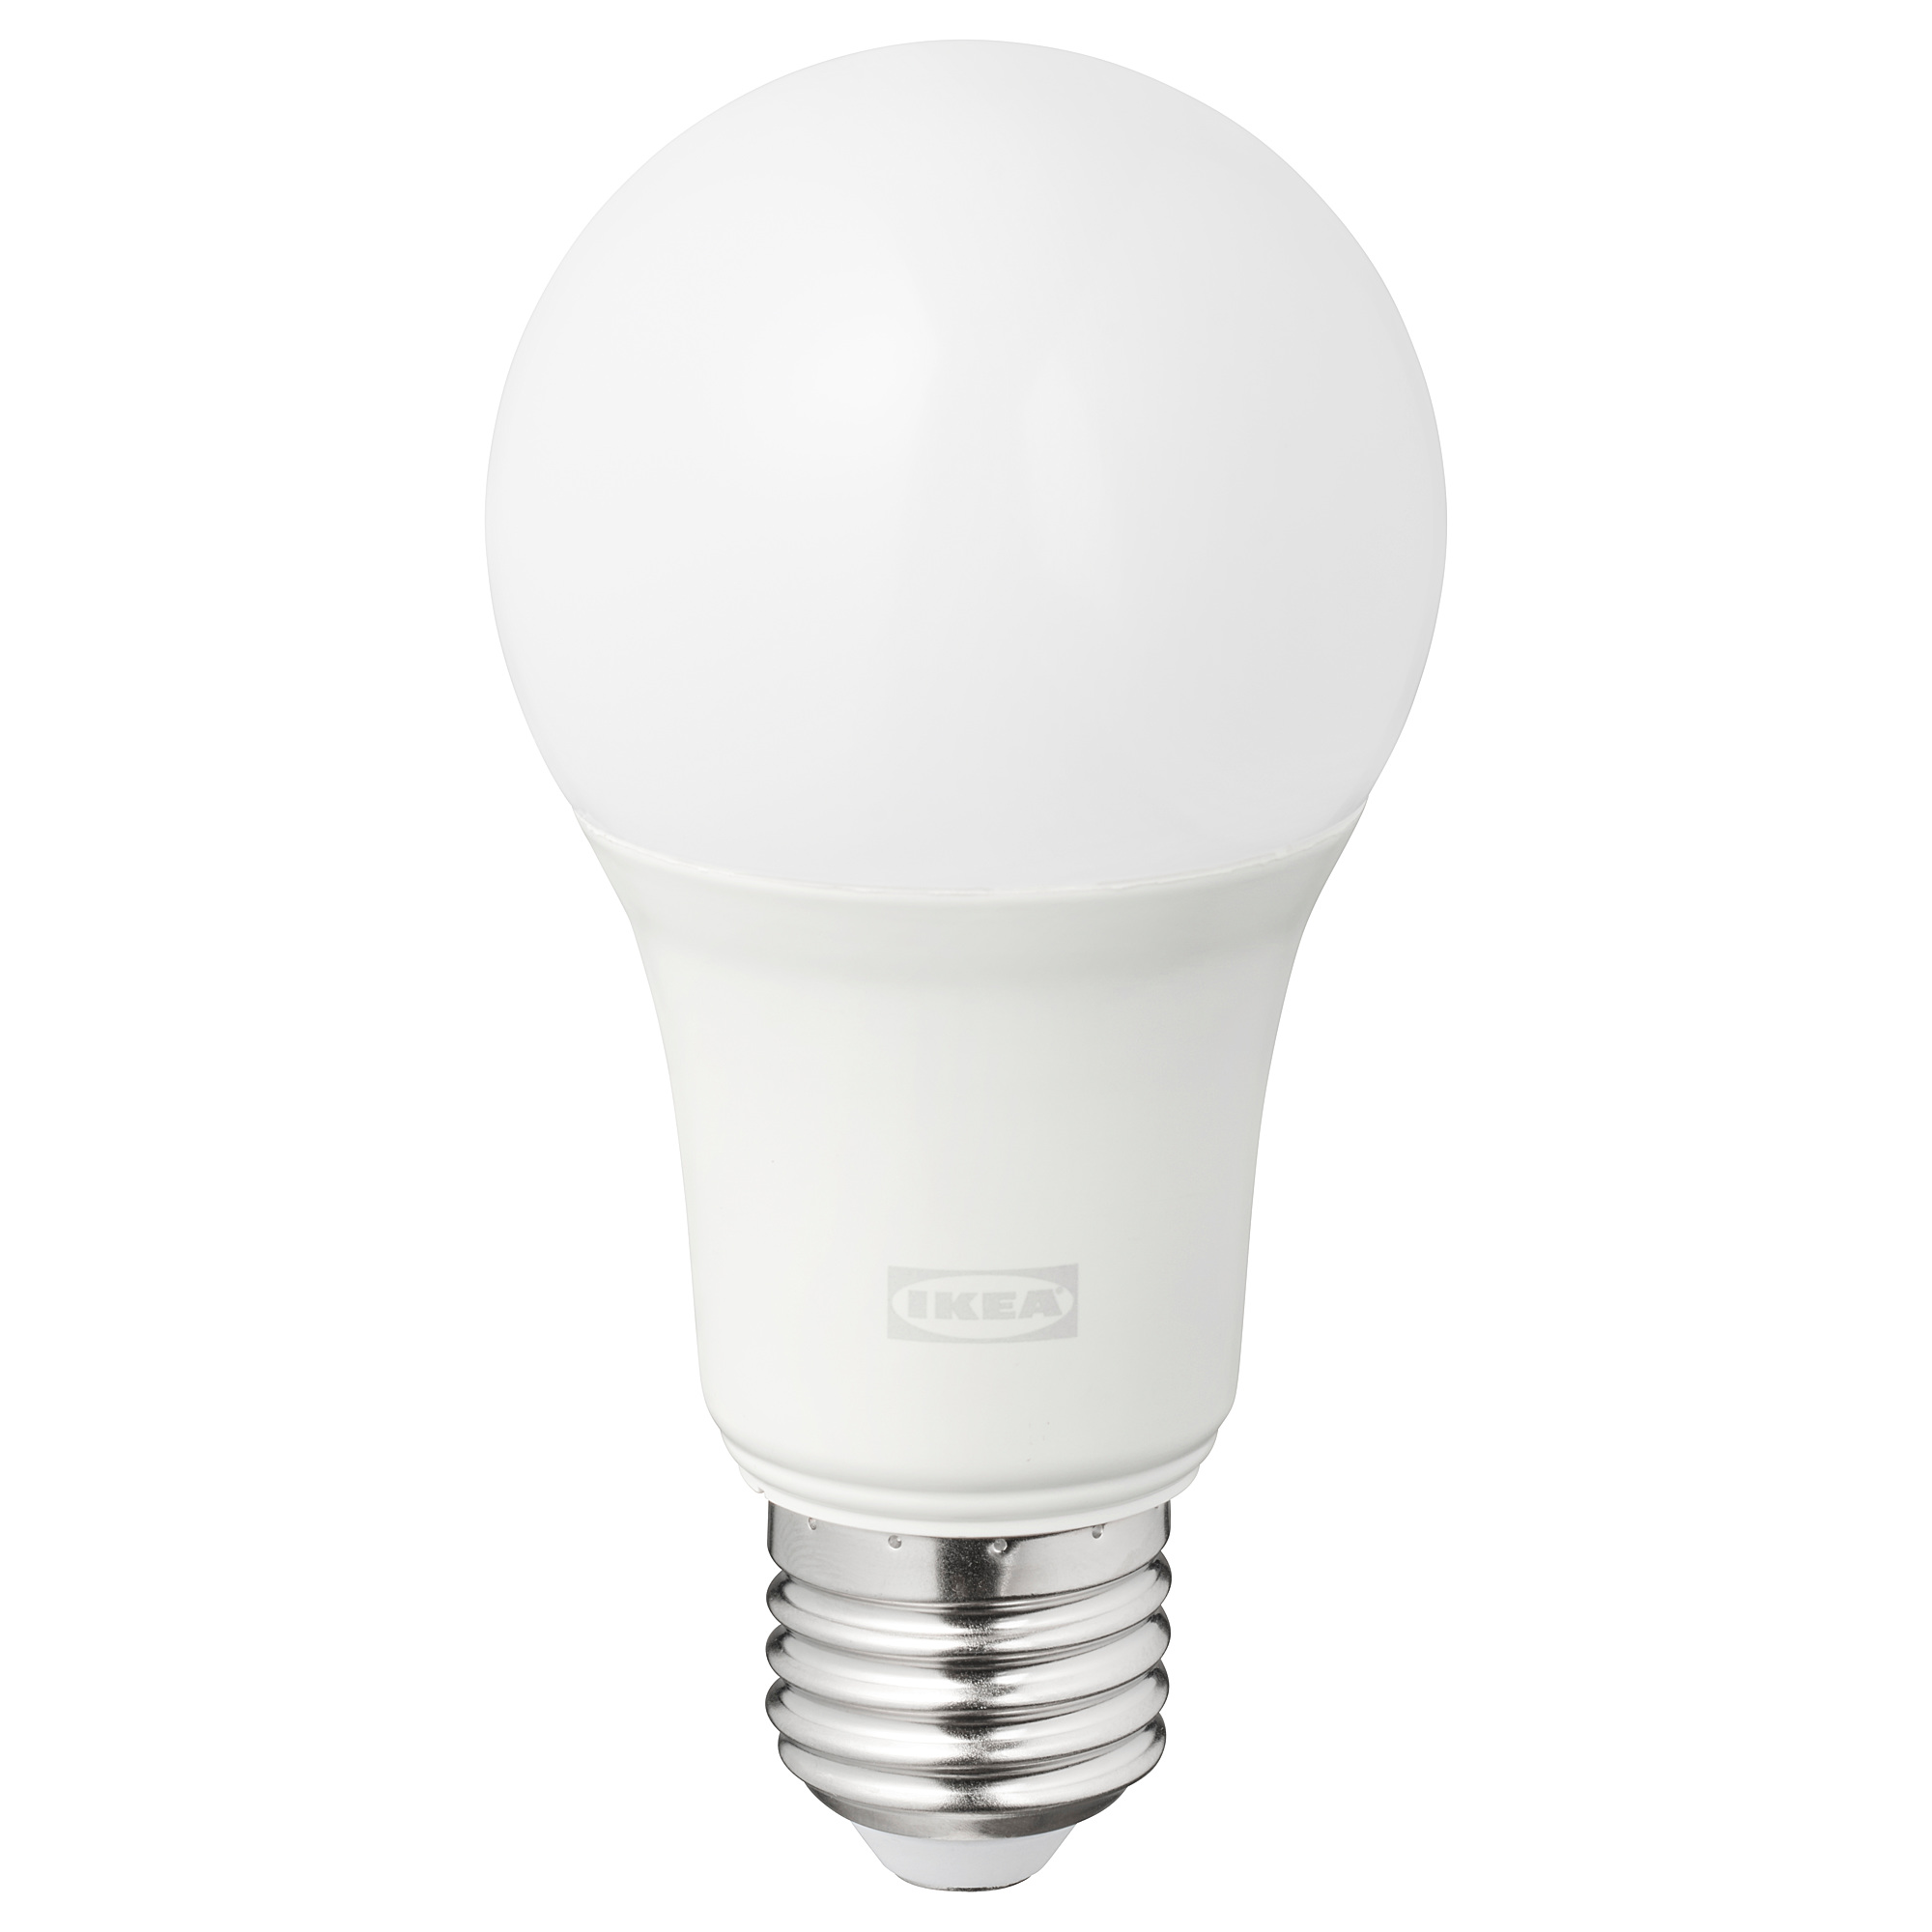 TRÅDFRI LED bulb E27 806 lumen